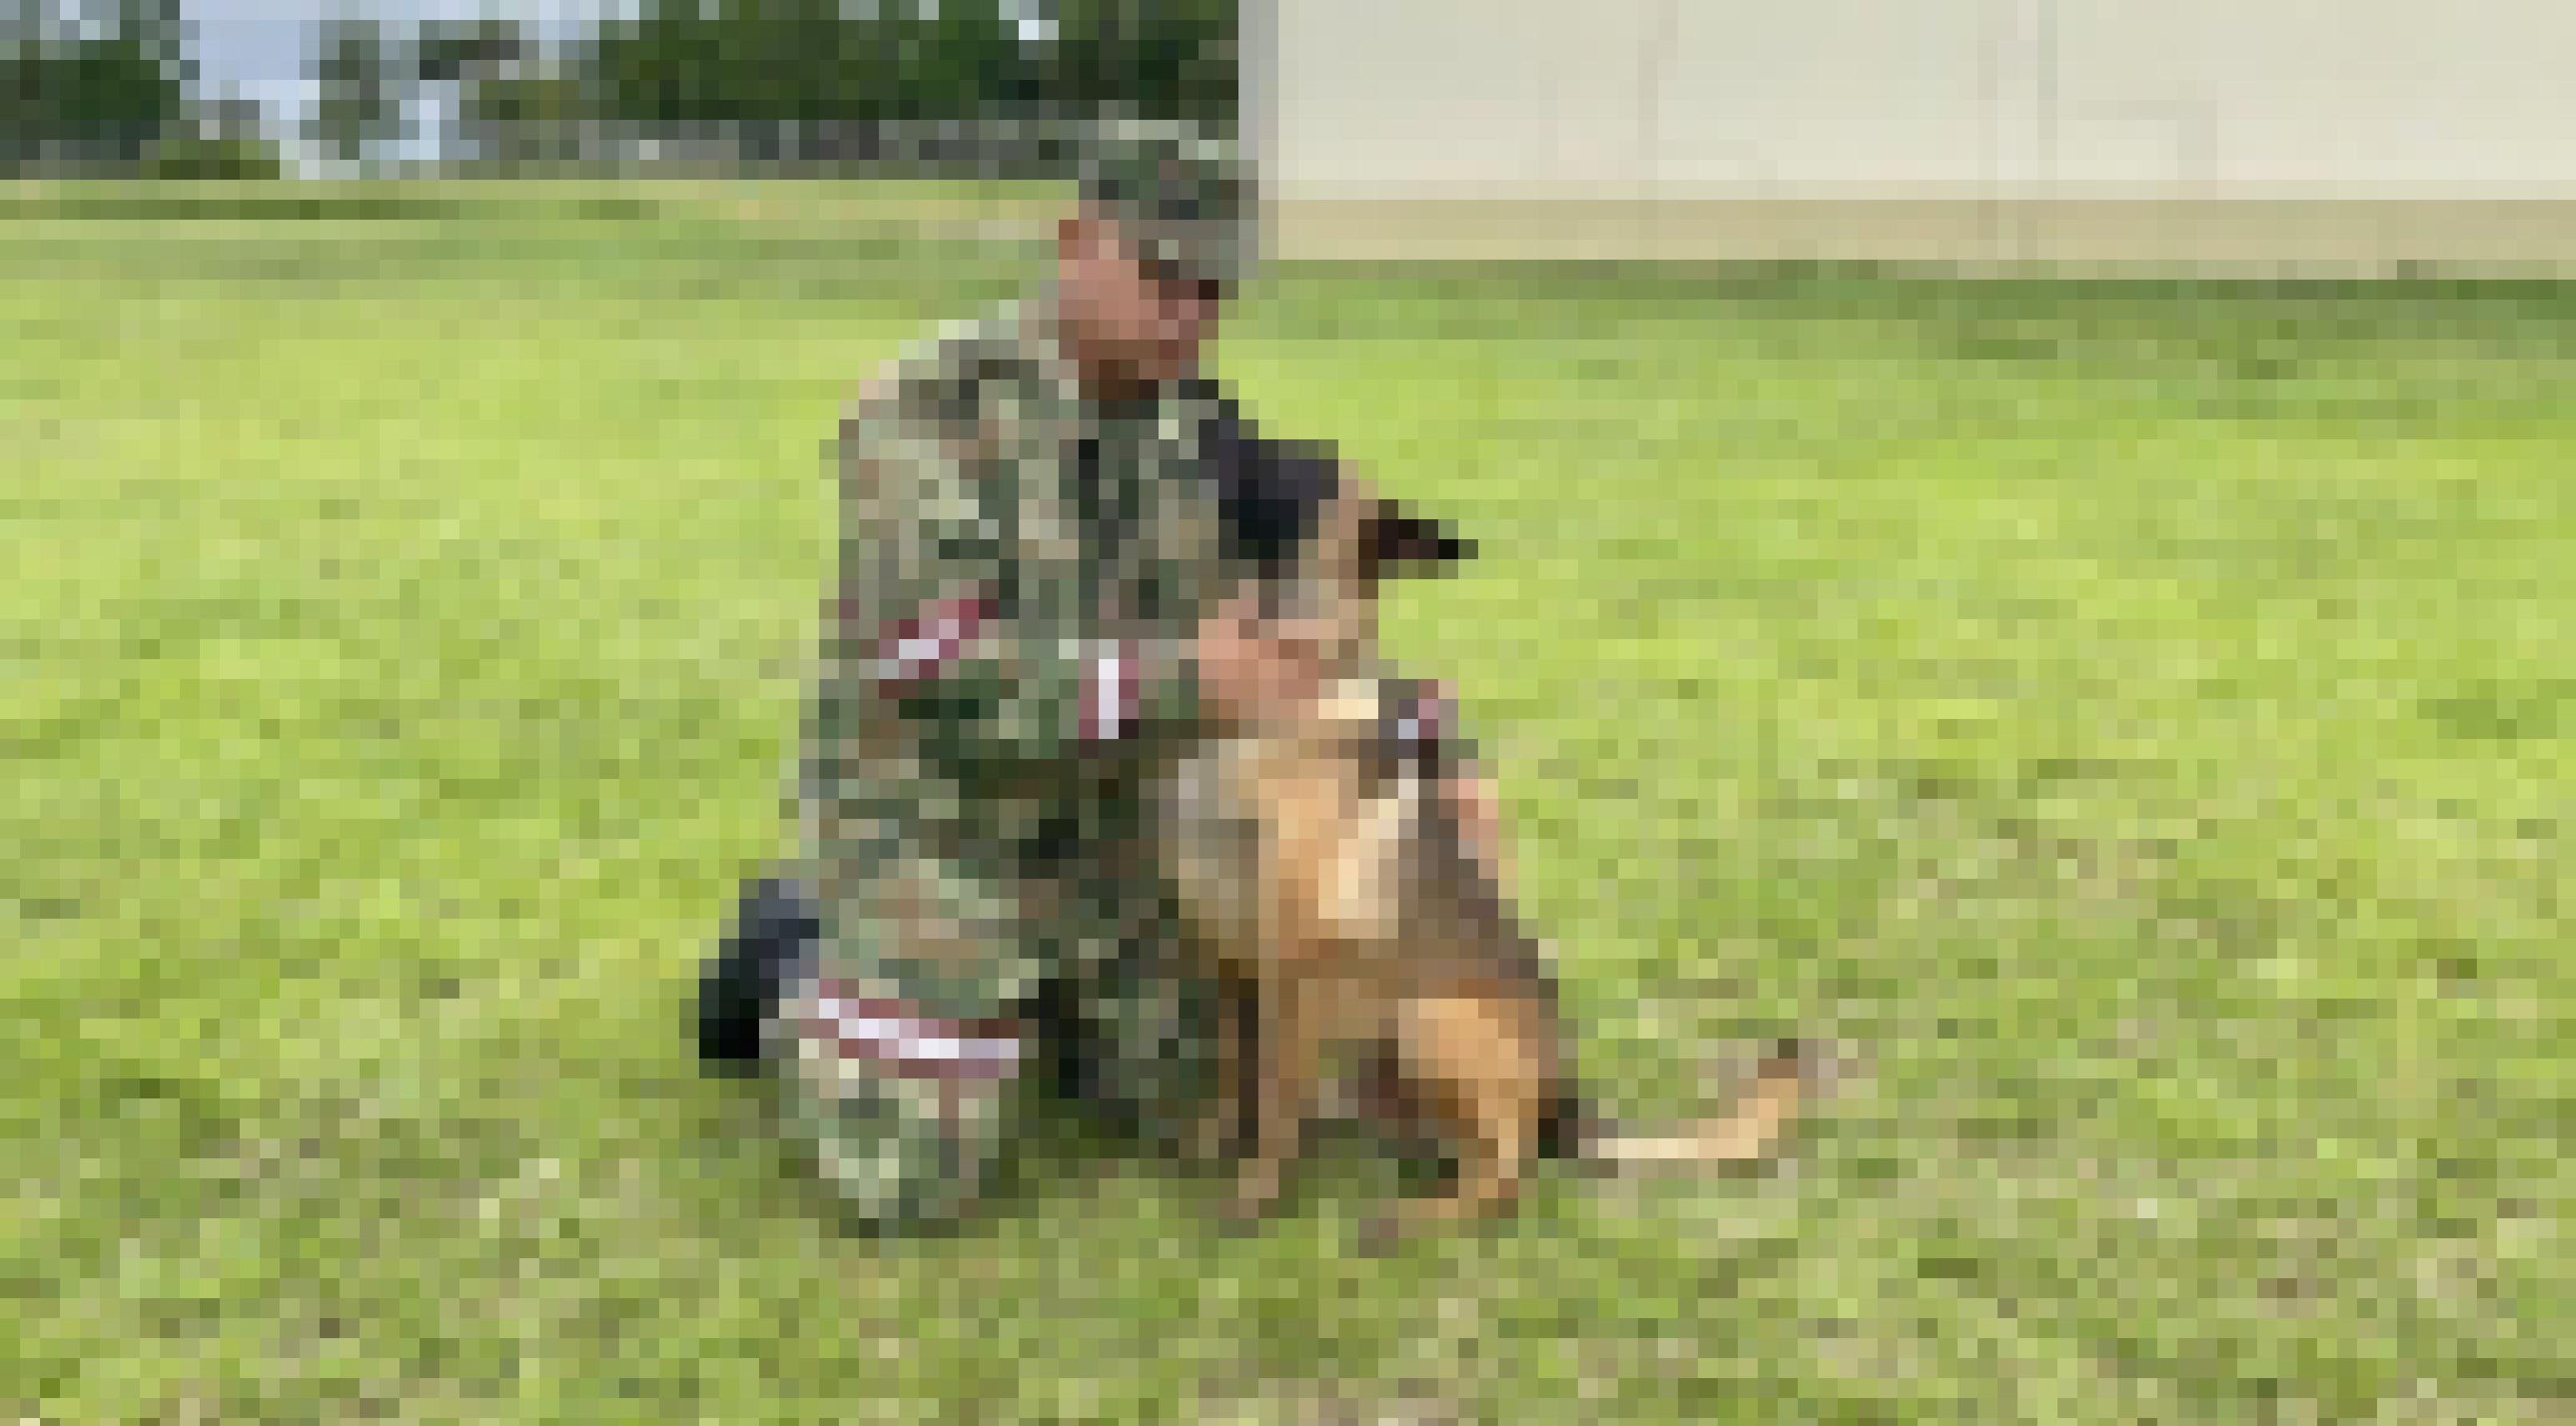 Soldat in Flechtern und Schiebermütze kniet neben Schäferhund auf einem Rasen. Der Hund blickt zu ihm hoch, er tätschelt ihn am Hals mit einer Hand und hat die andere um ihn gelegt.